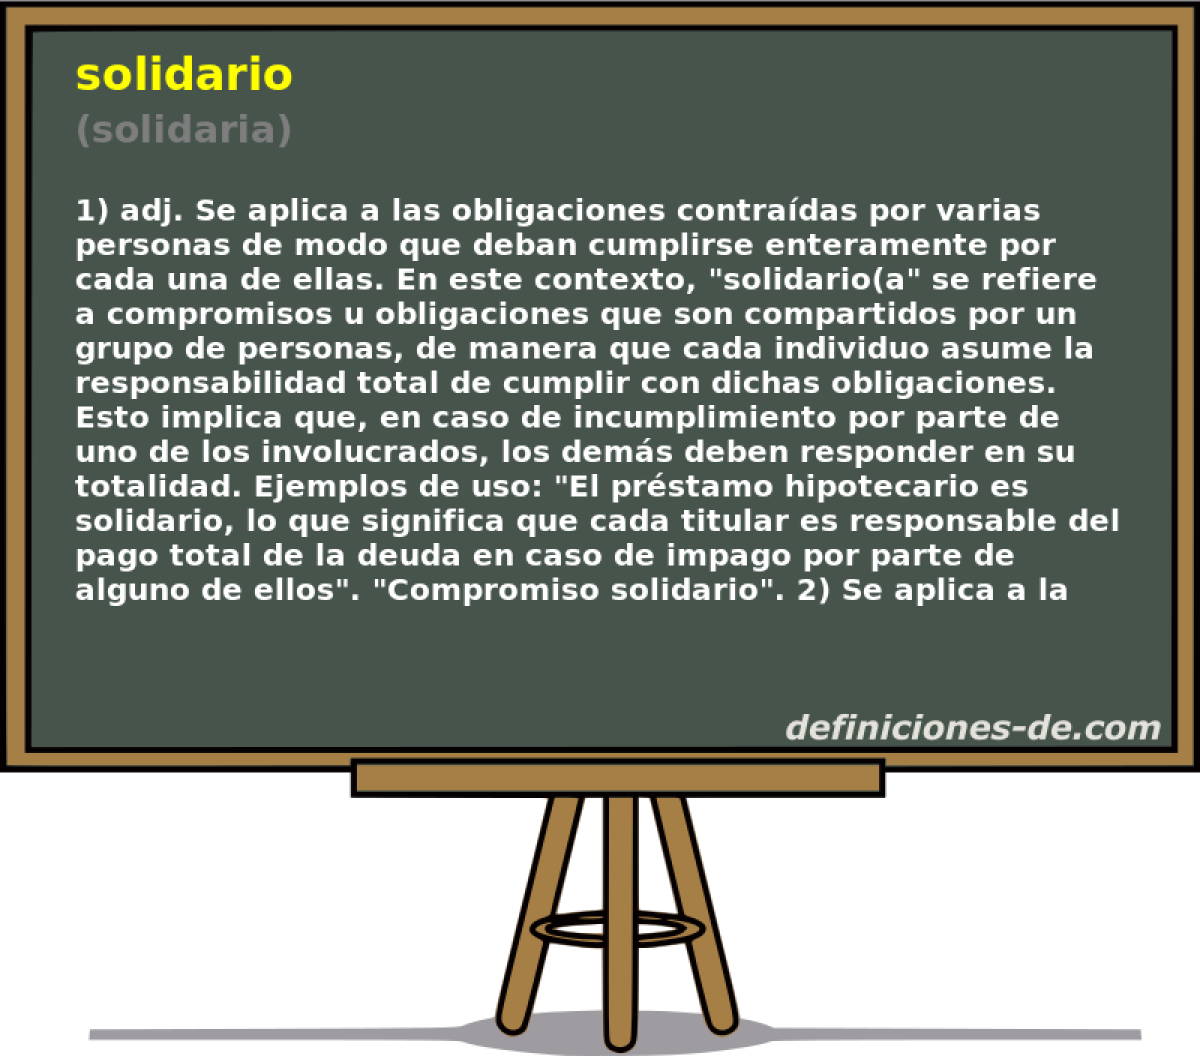 solidario (solidaria)